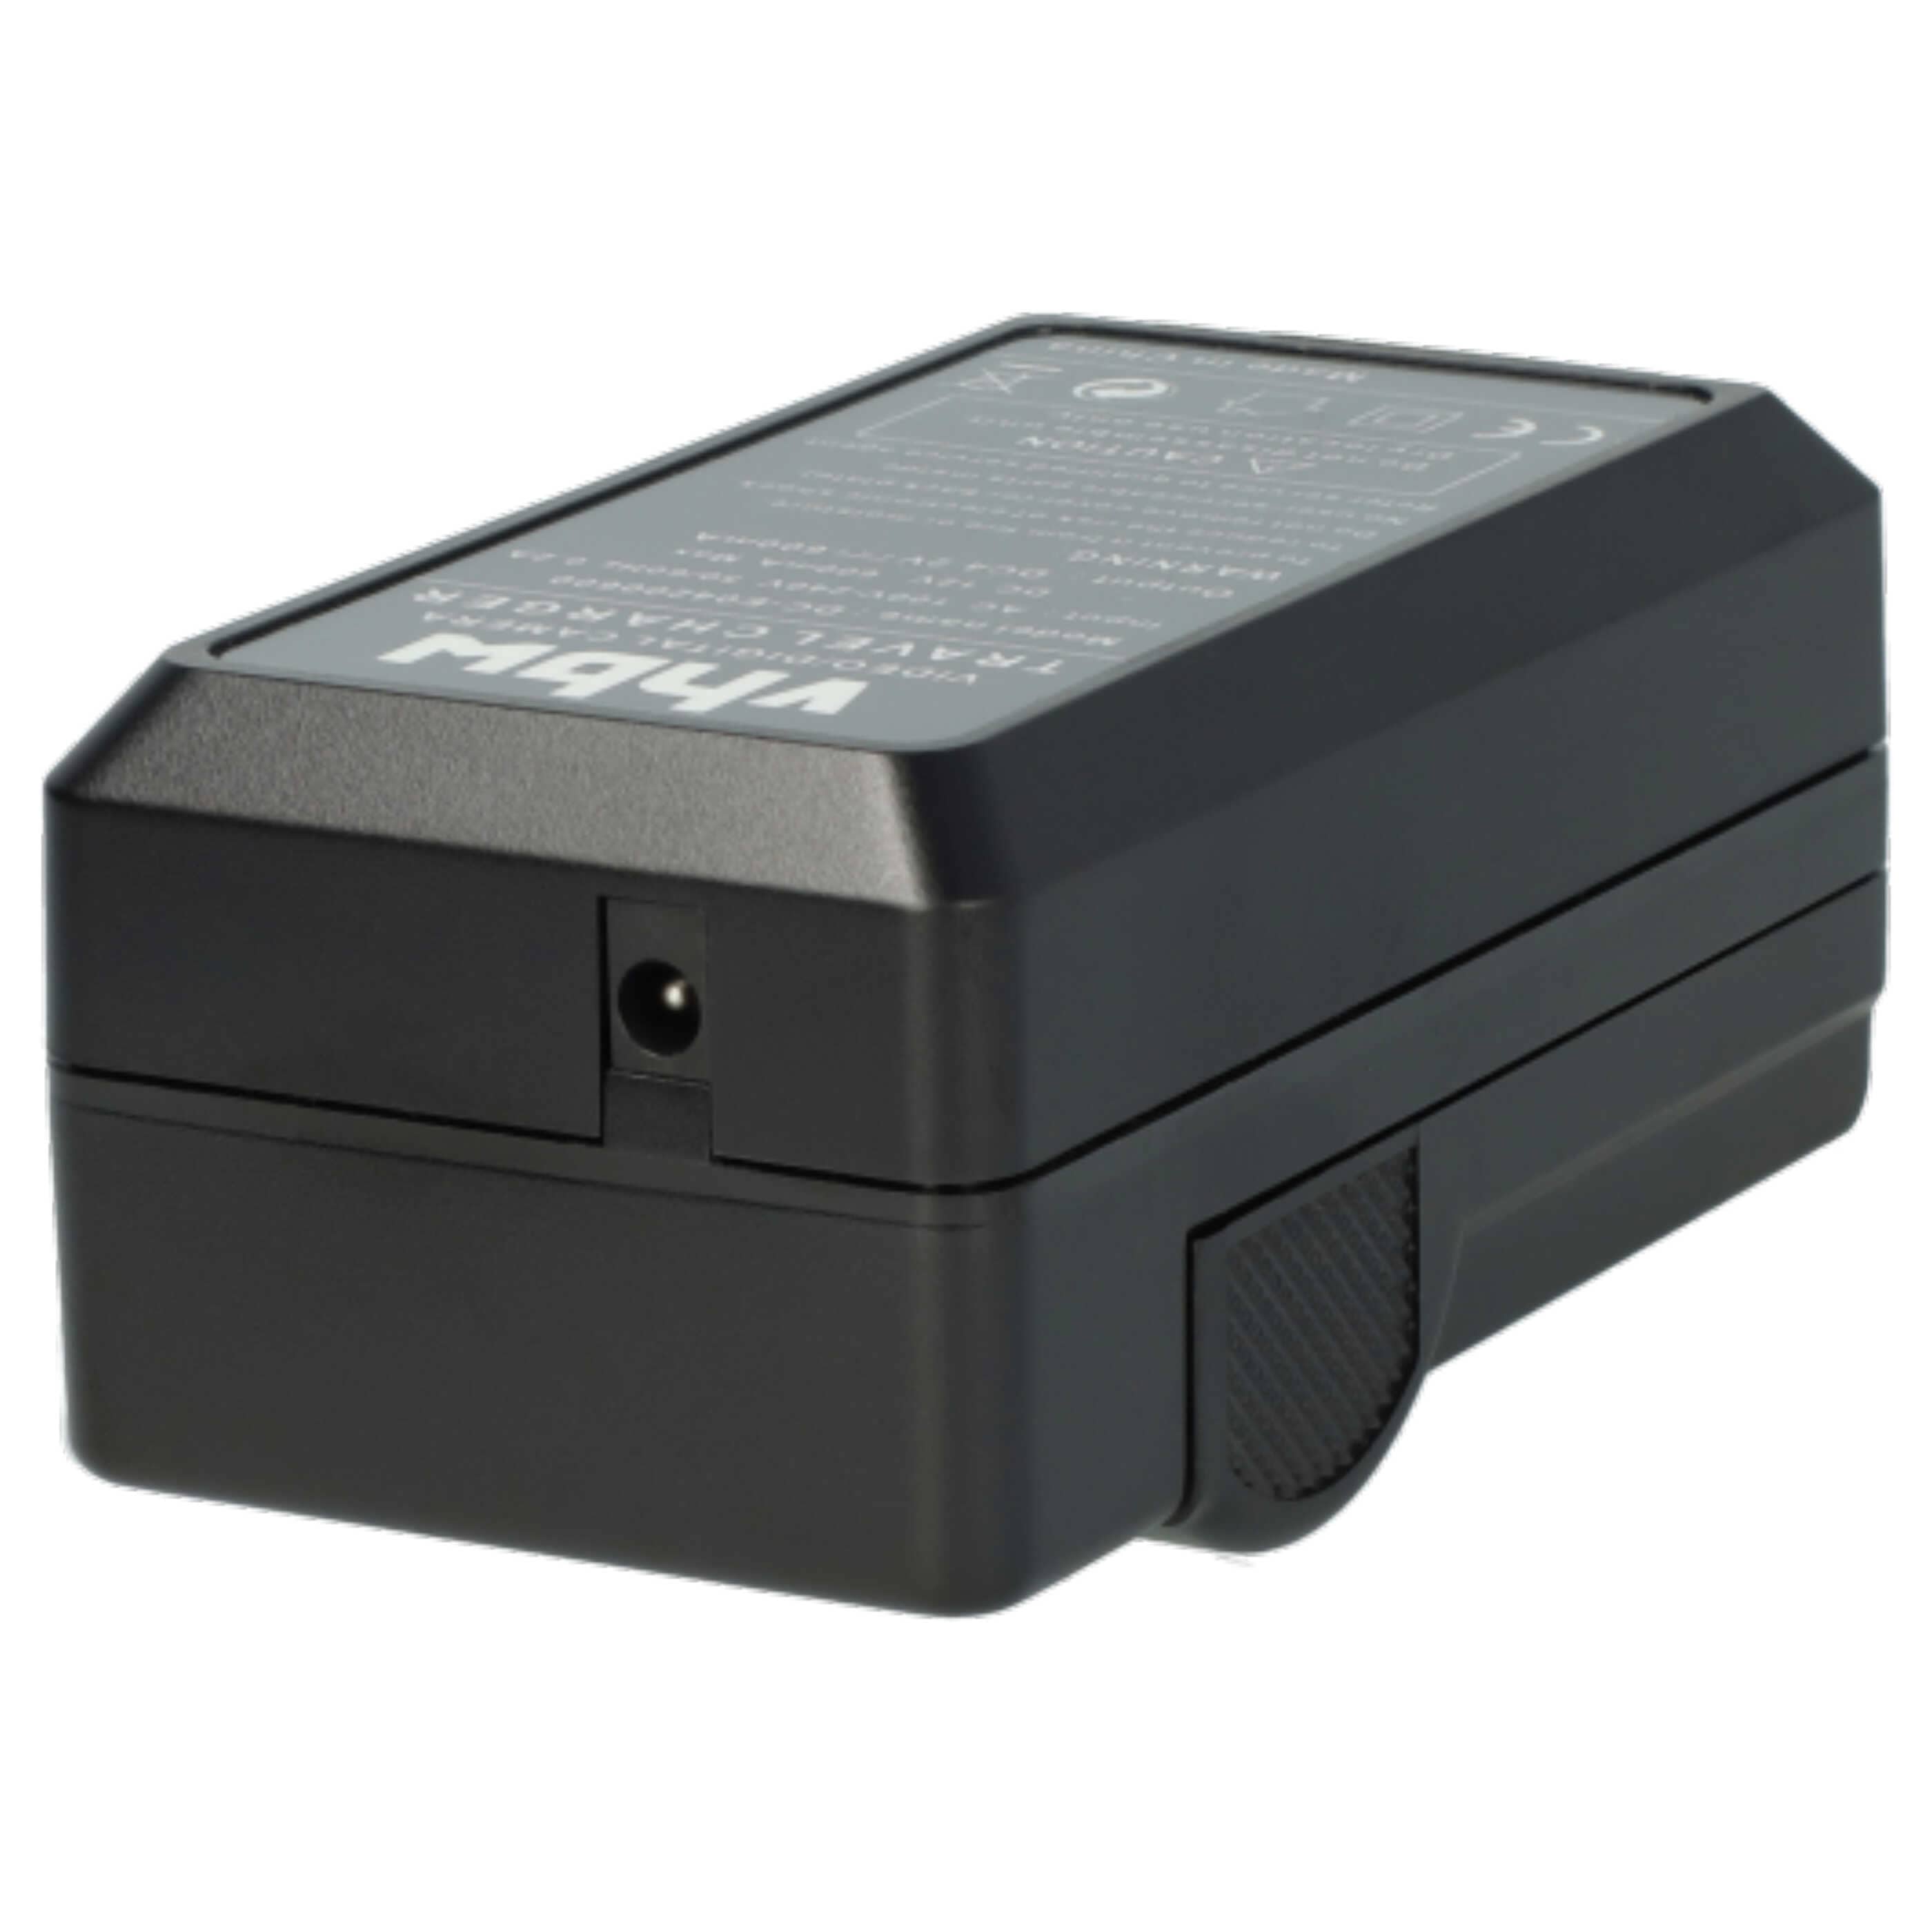 Akku Ladegerät passend für Pentax Digitalkamera und weitere - 0,6 A, 4,2 V